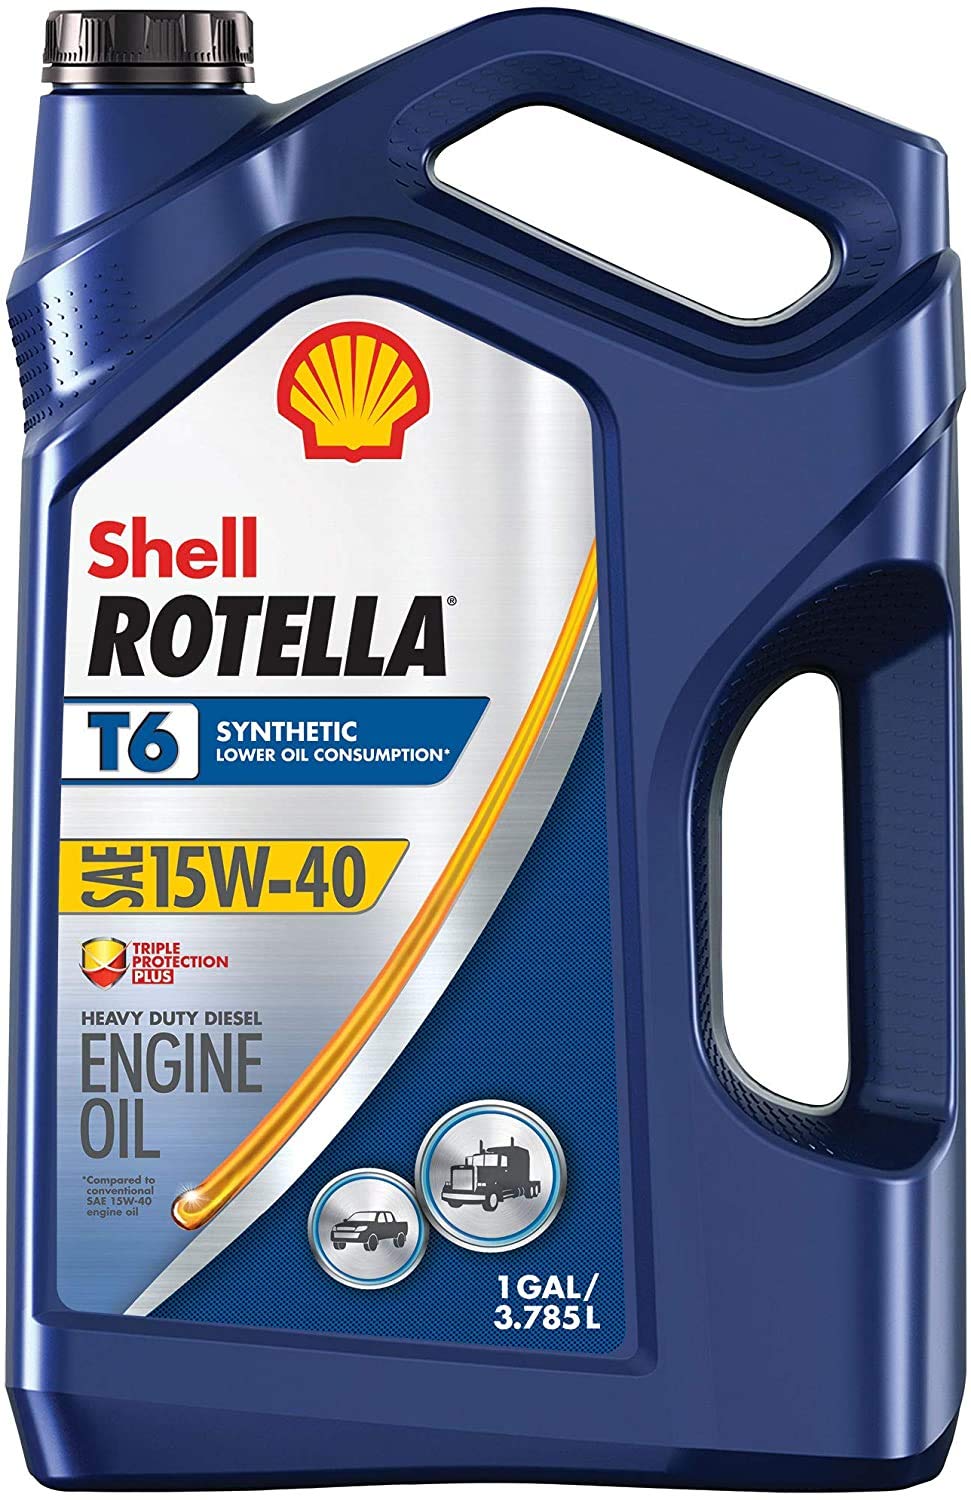 Shell Rotella زيت محرك الديزل T6 التخليقي بالكامل